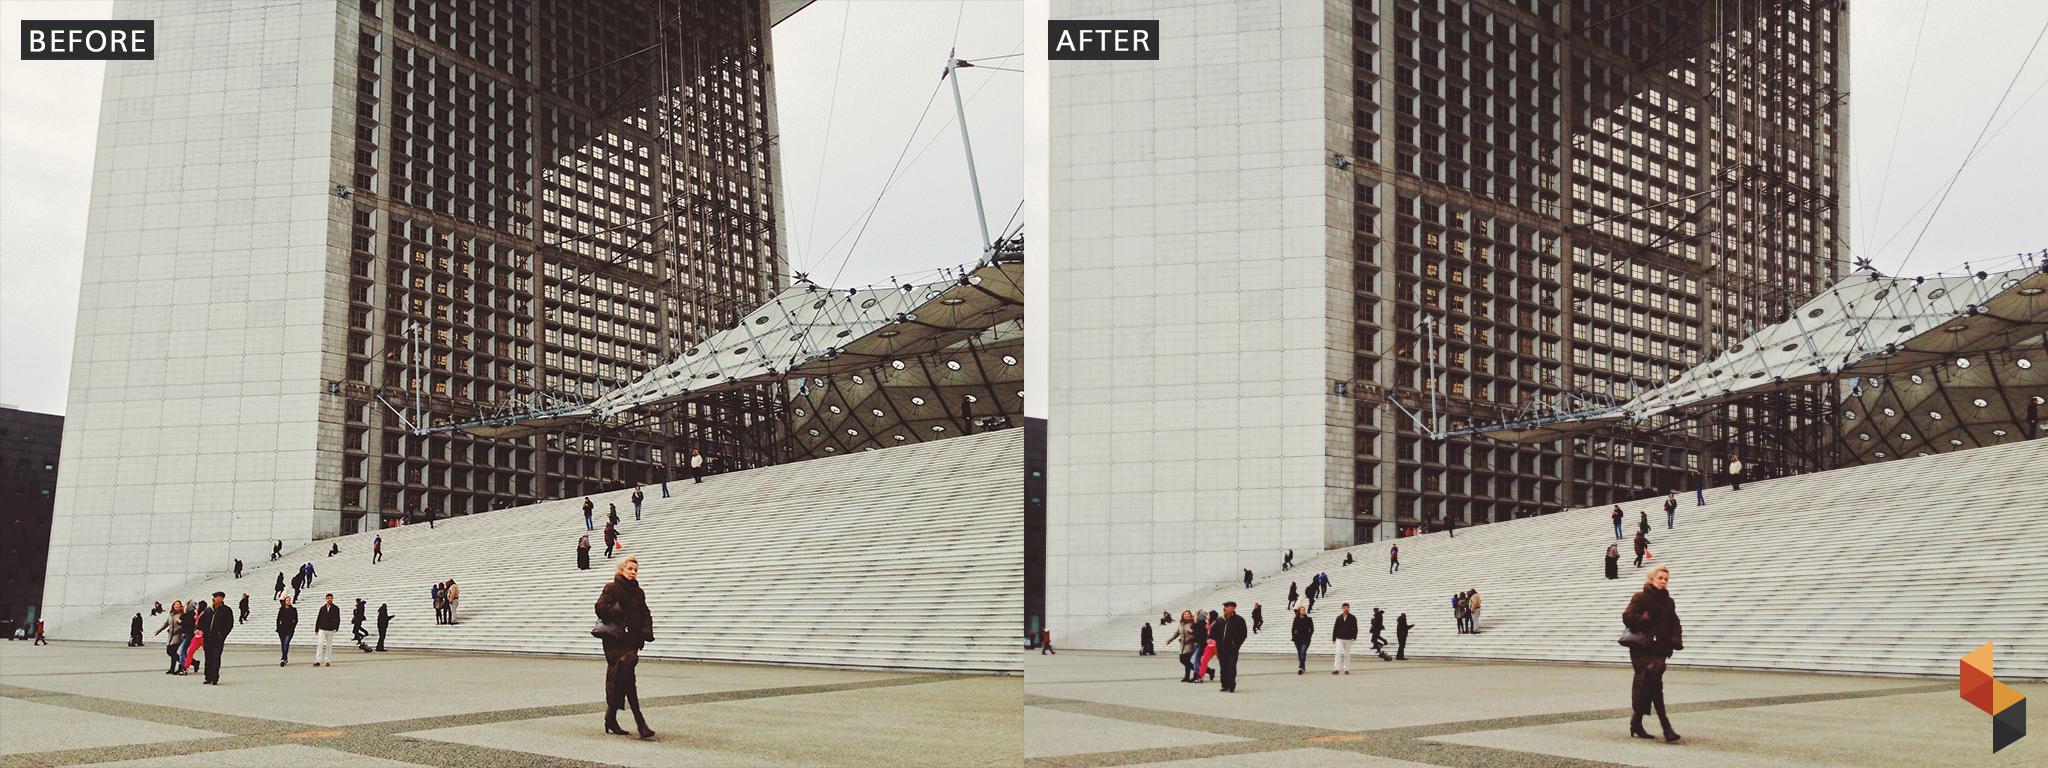 Po lewej zdjęcie nowoczesnego budynku, po prawej to samo zdjęcie po retuszu.